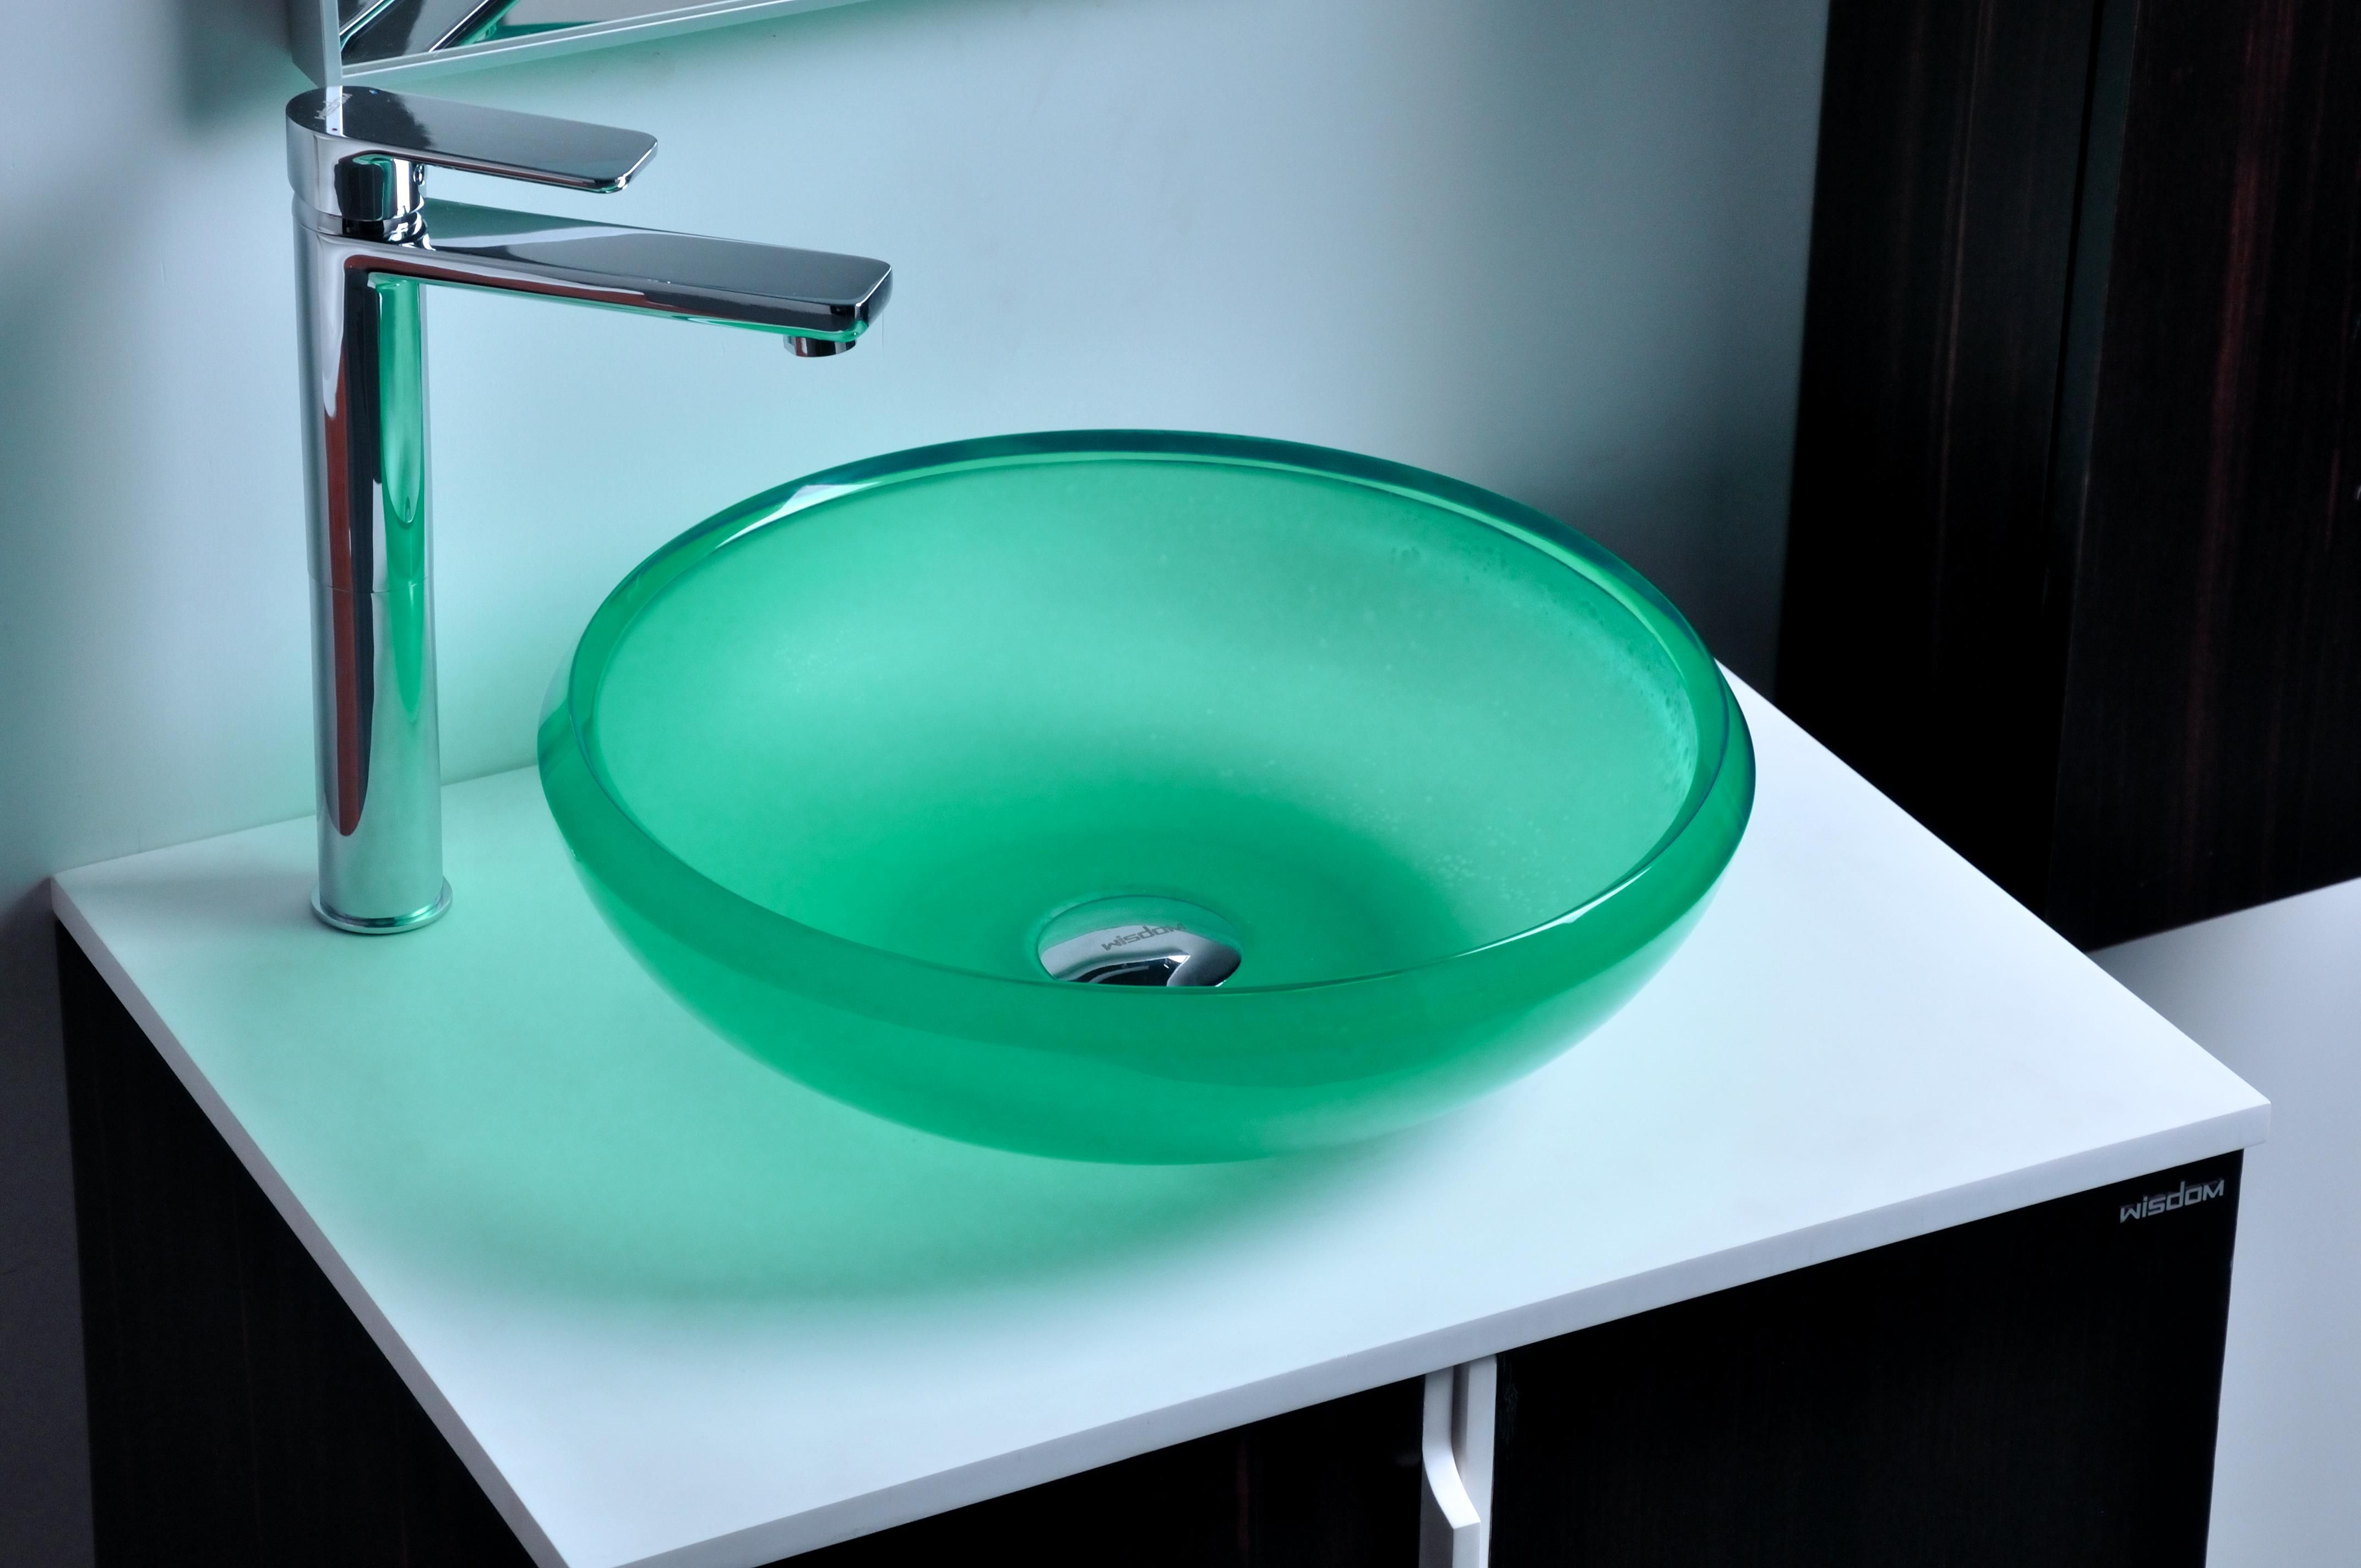 Reçine Yuvarlak Tezgah Lavabo Renkli Ploakroom Washbasin Katı Yüzey Taş Kapı Rs38278